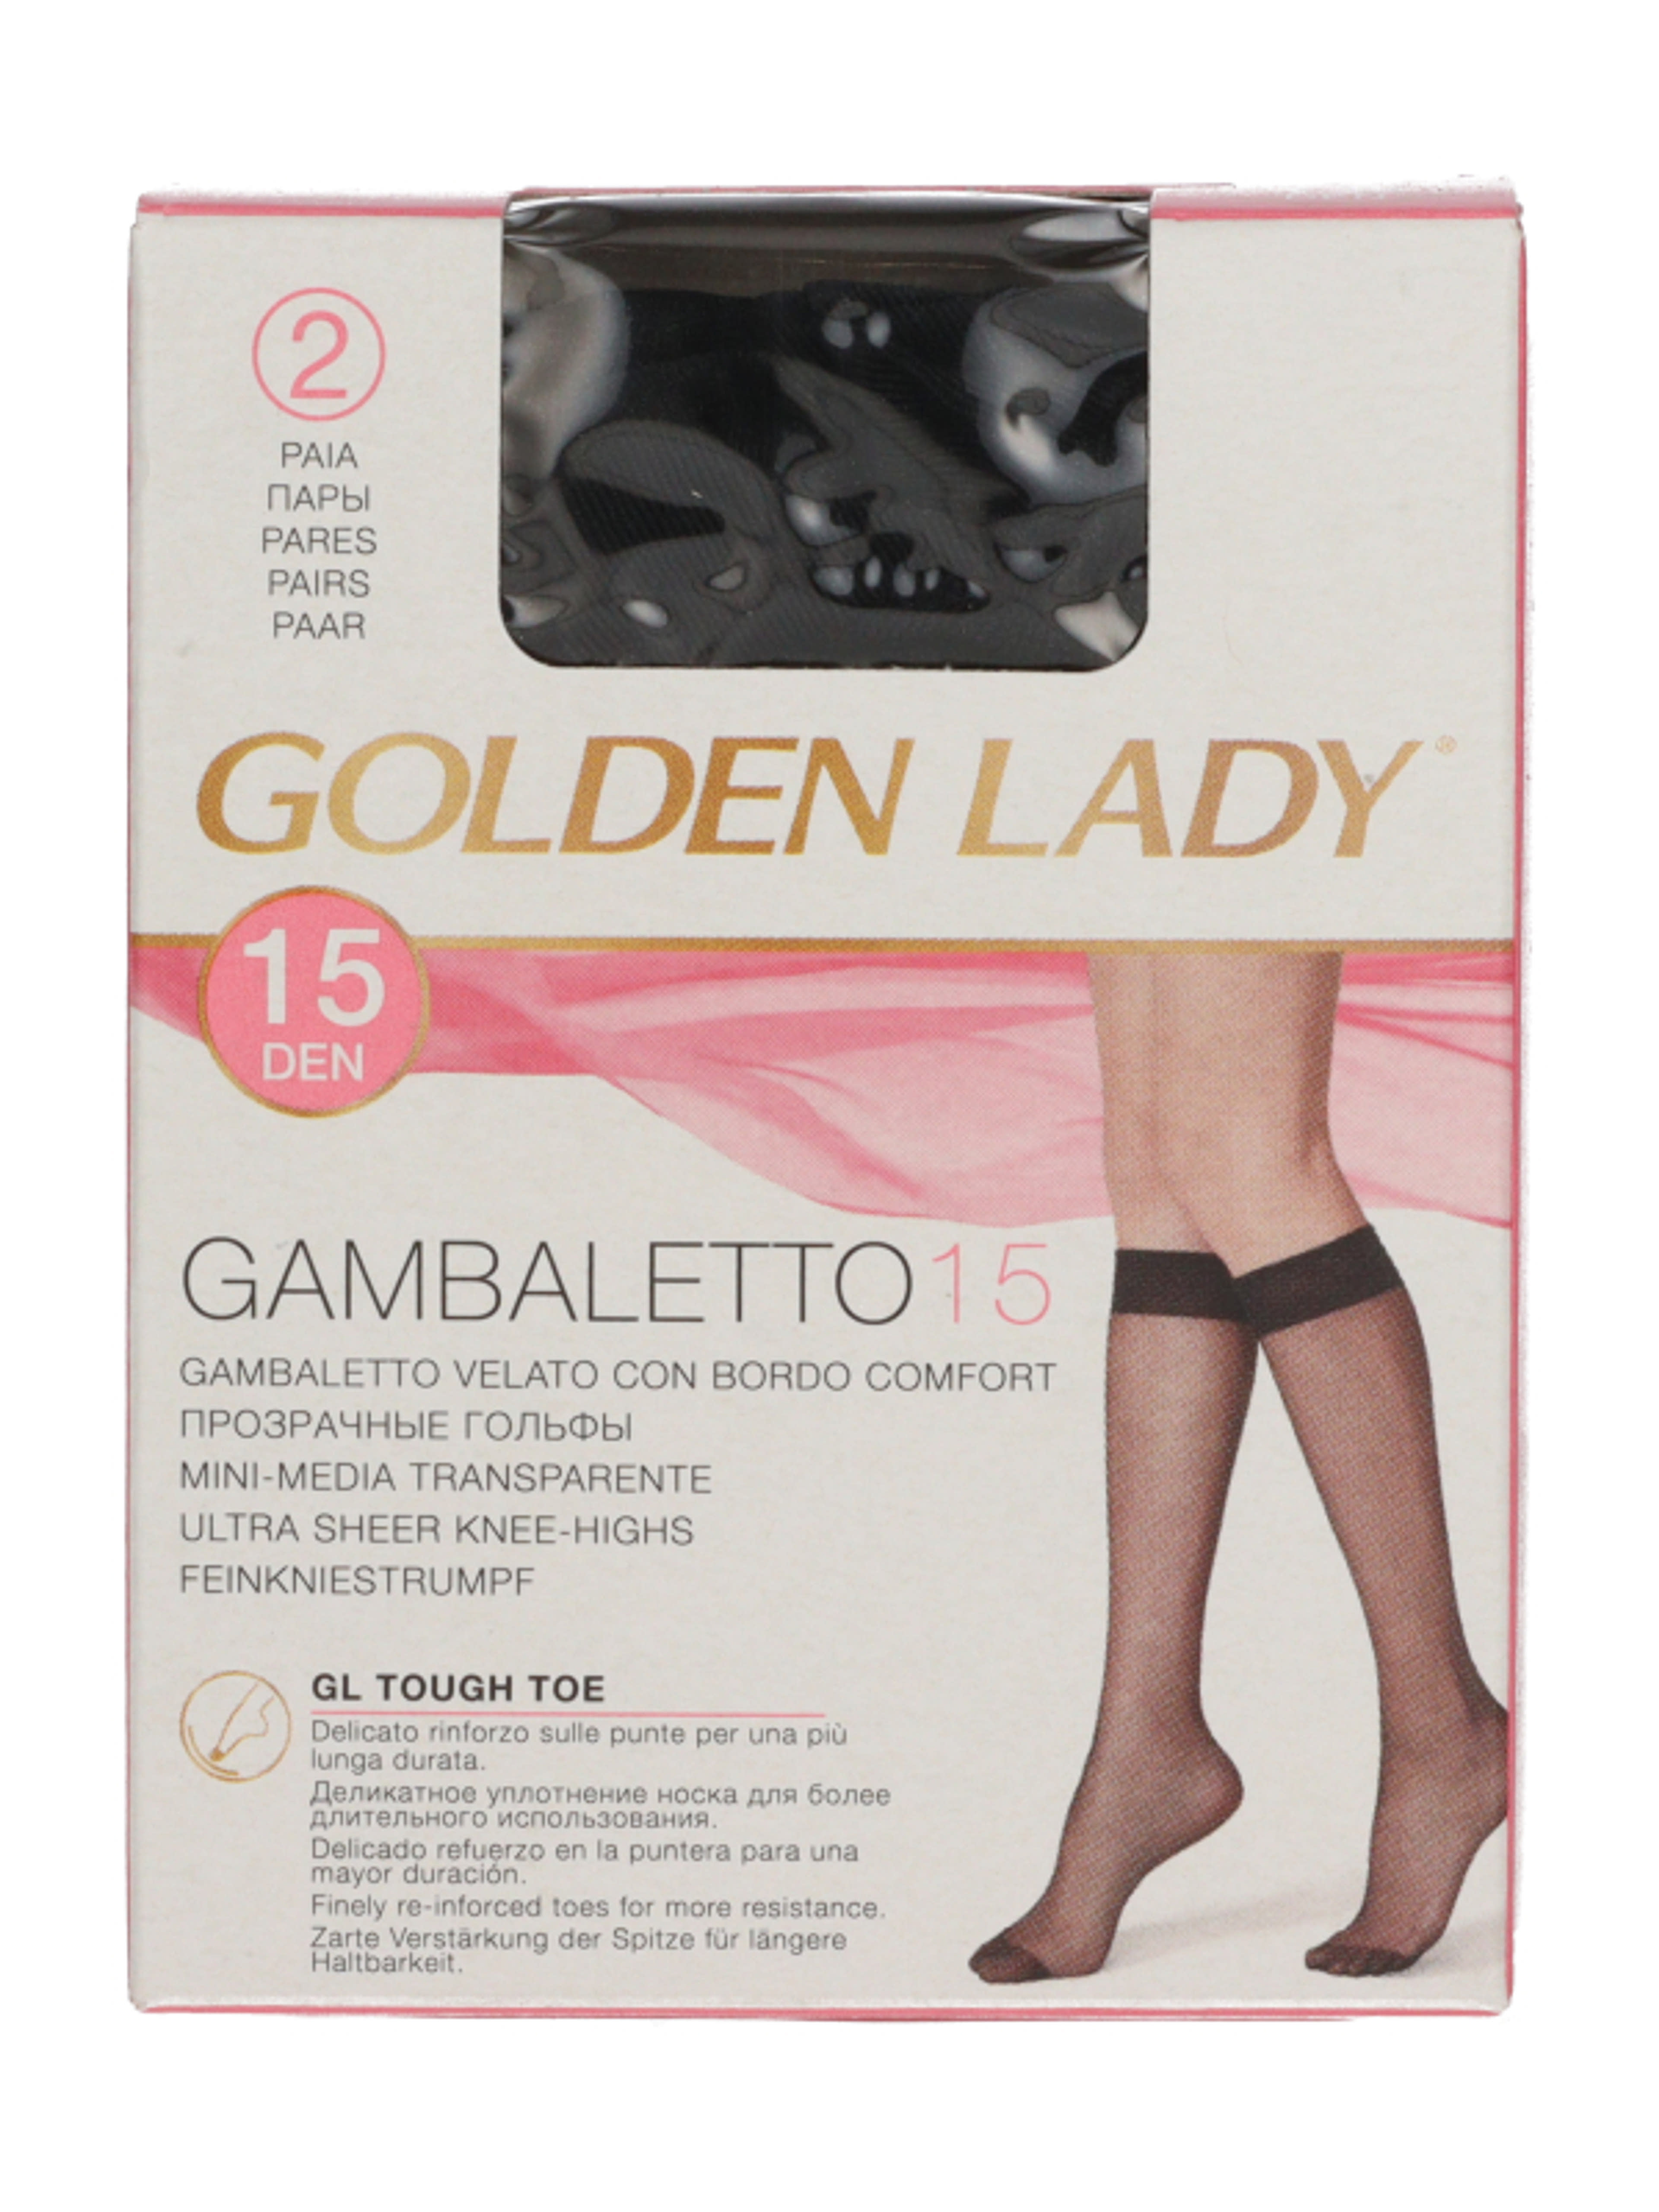 Golden Lady Gambaletto térdfix 15 Den fekete - 2 db-2